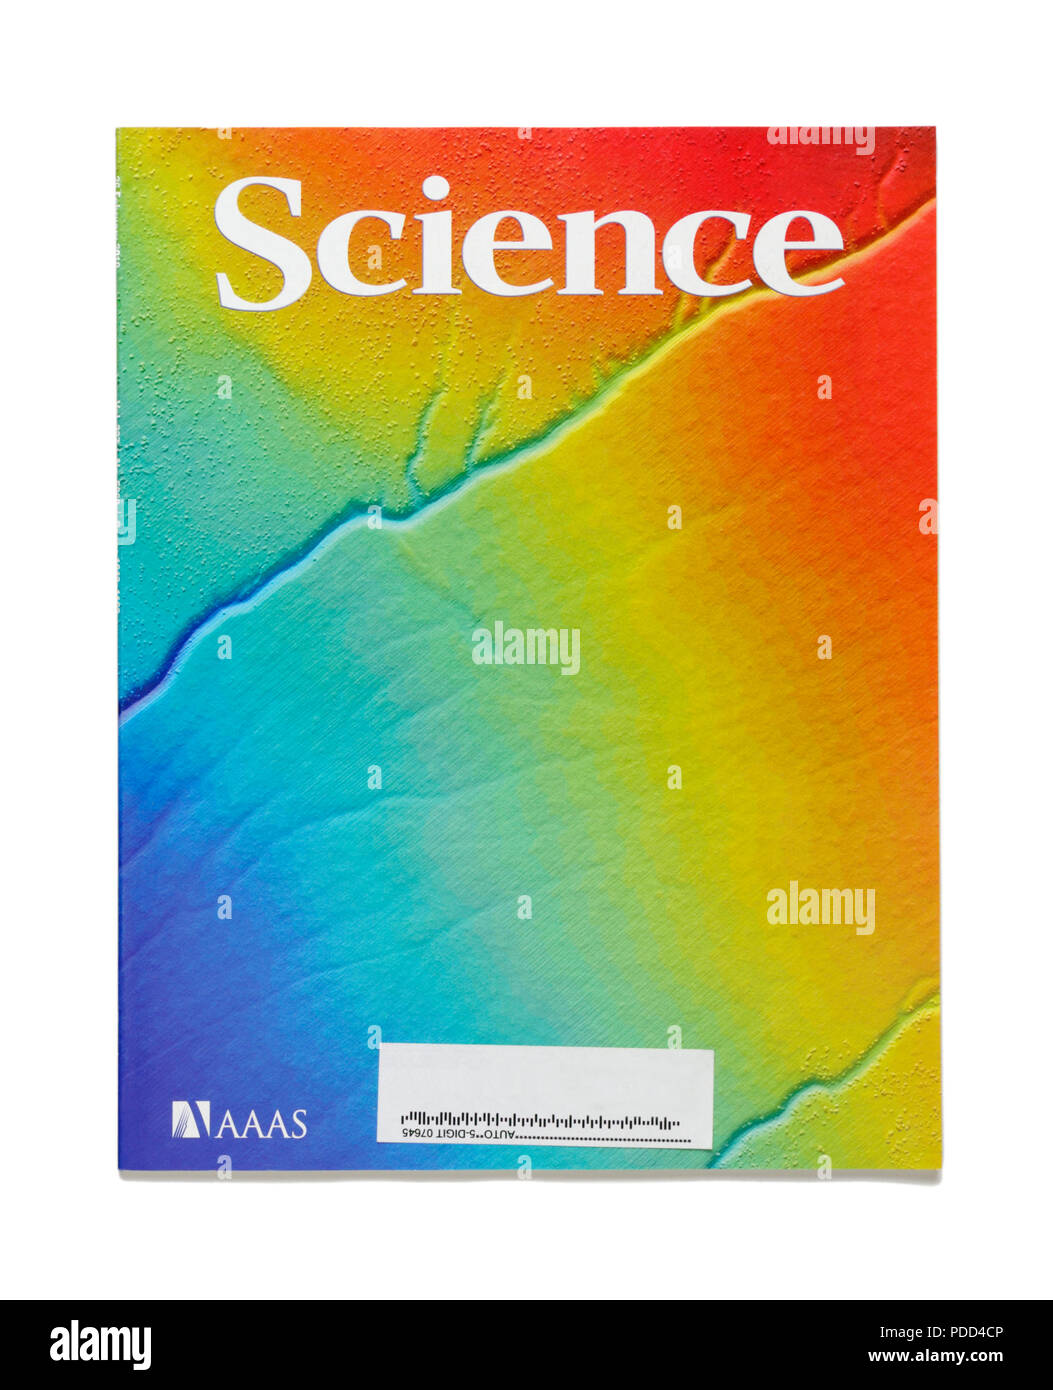 Referierten wissenschaftlichen Zeitschriften. Dieses Journal, Wissenschaft, wird herausgegeben von der Amerikanischen Gesellschaft zur Förderung der Wissenschaft (AAAS). Stockfoto